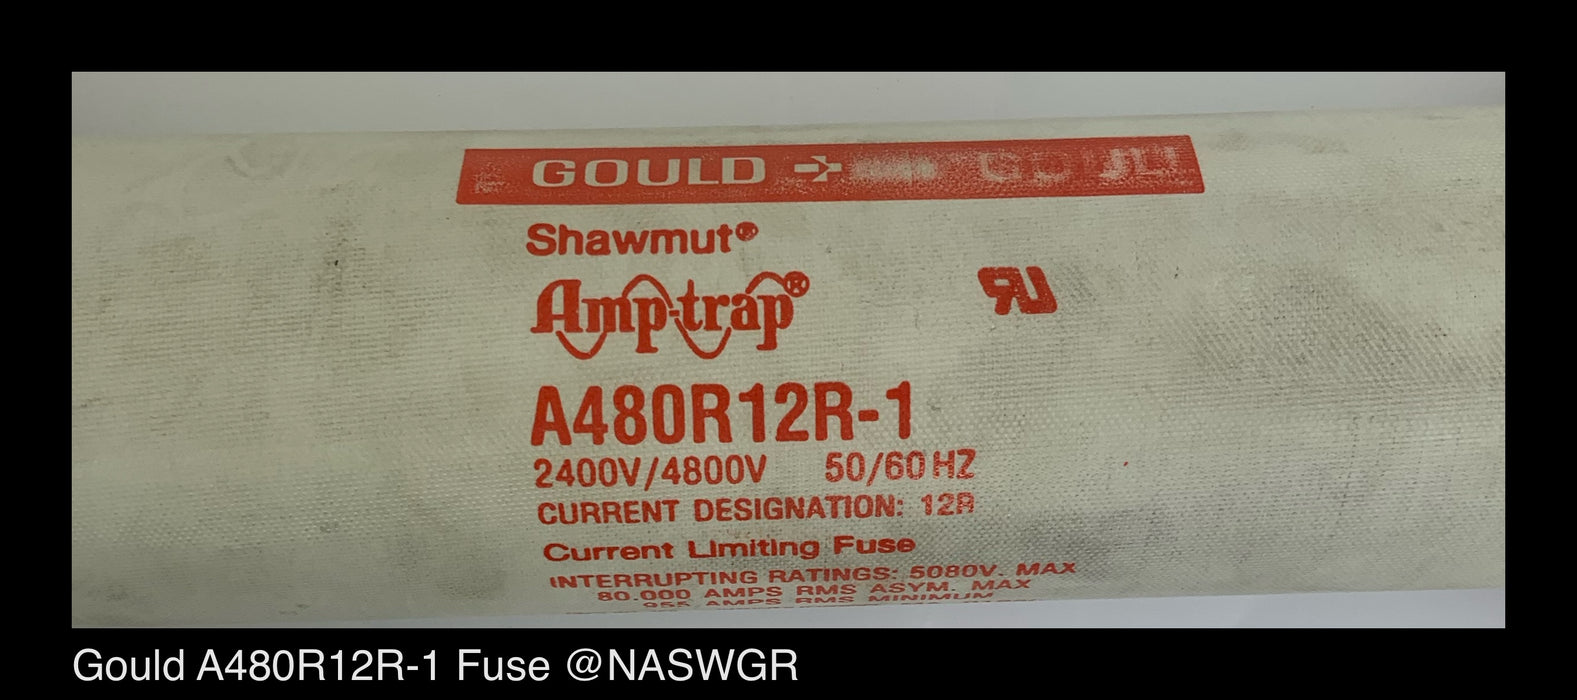 Gould Shawmut A480R12R-1 Fuse